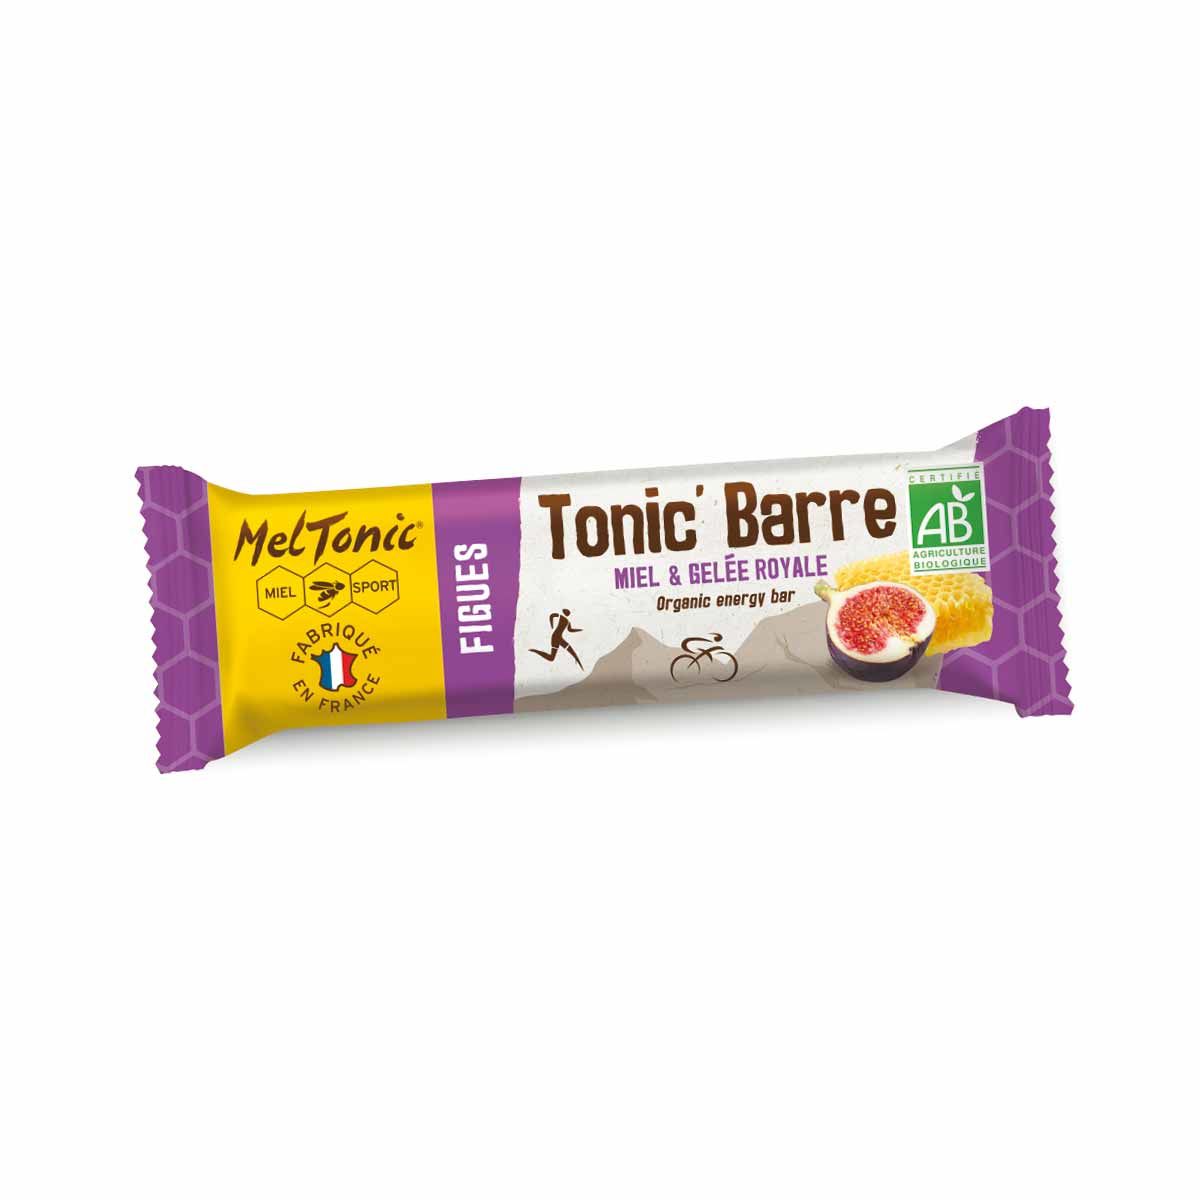 Meltonic organic energy bar - Honey and figs